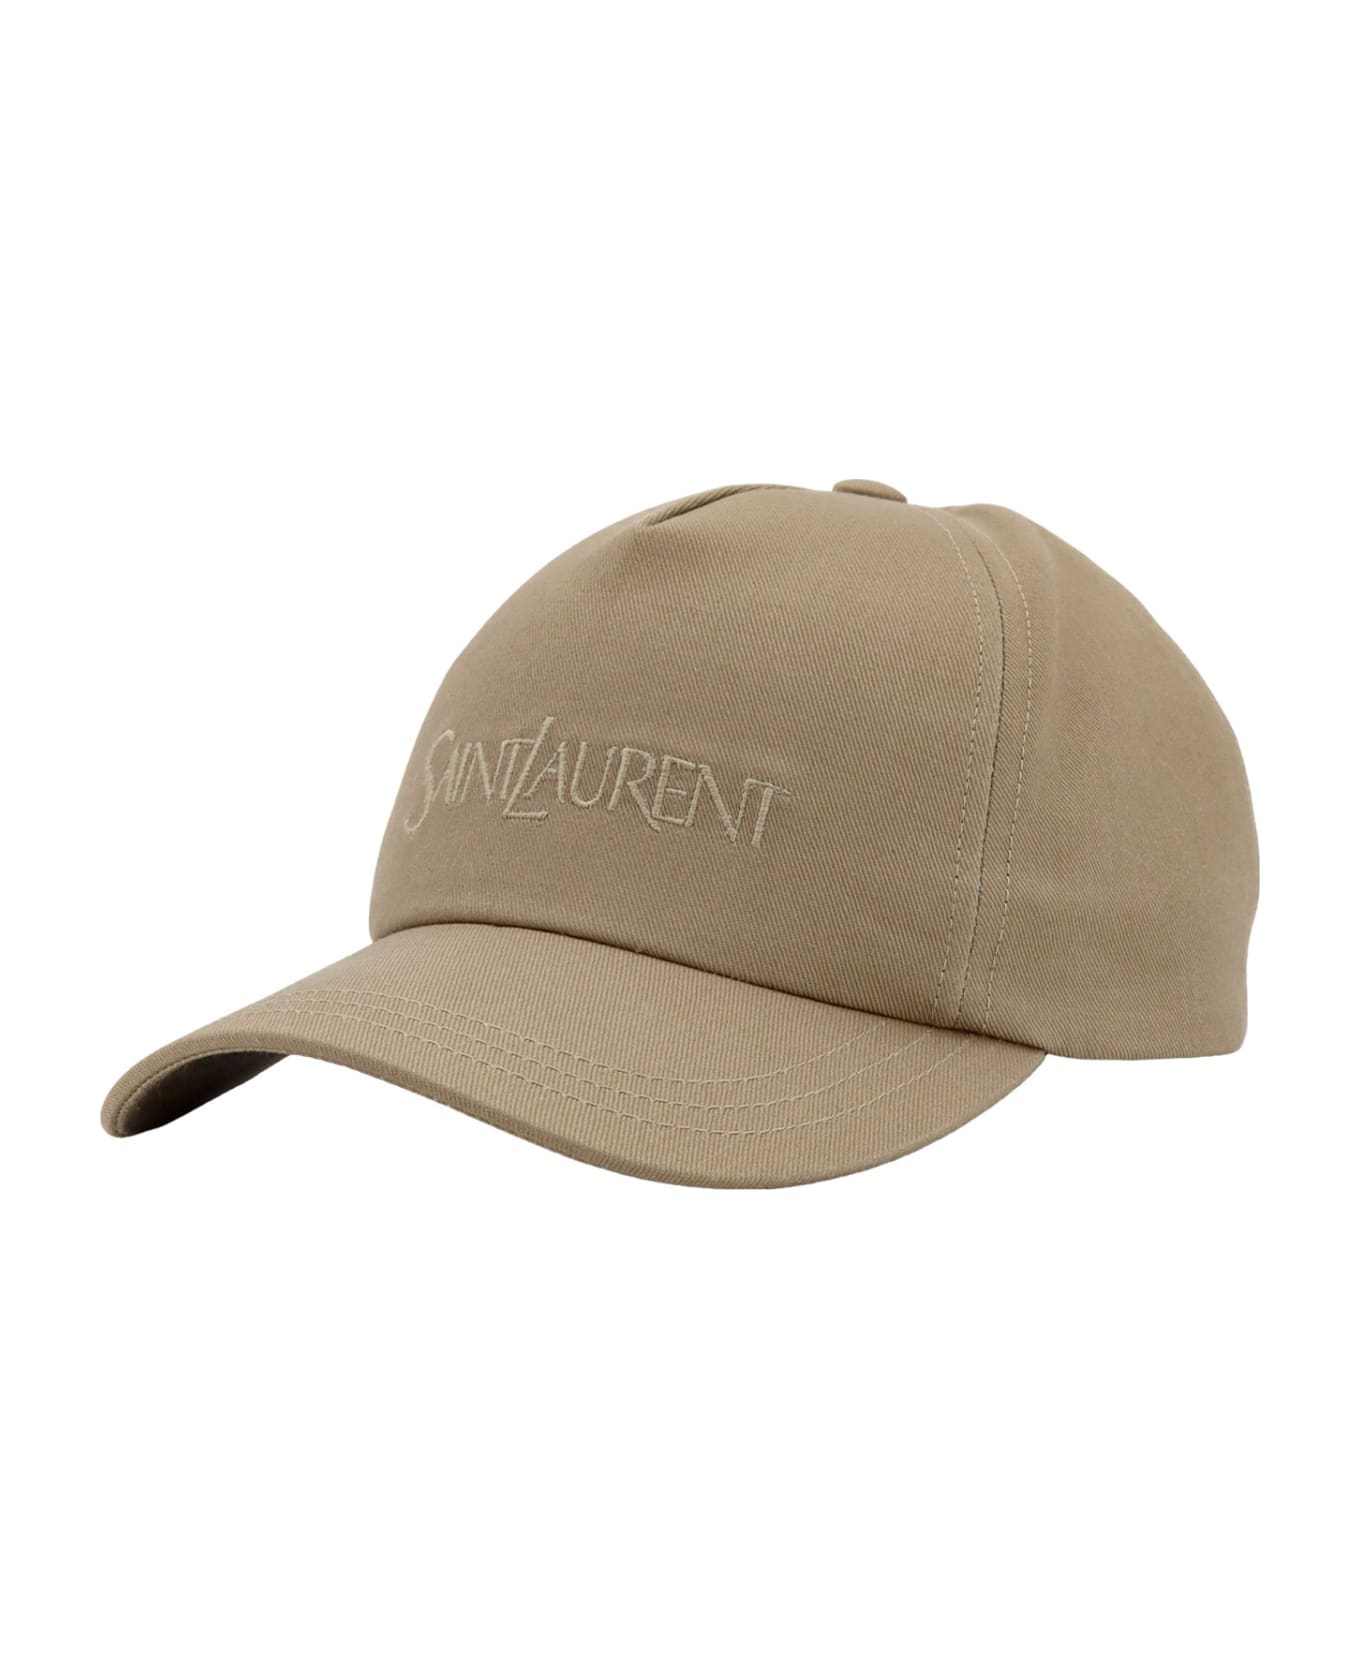 Saint Laurent Baseball Cap - Nude & Neutrals 帽子